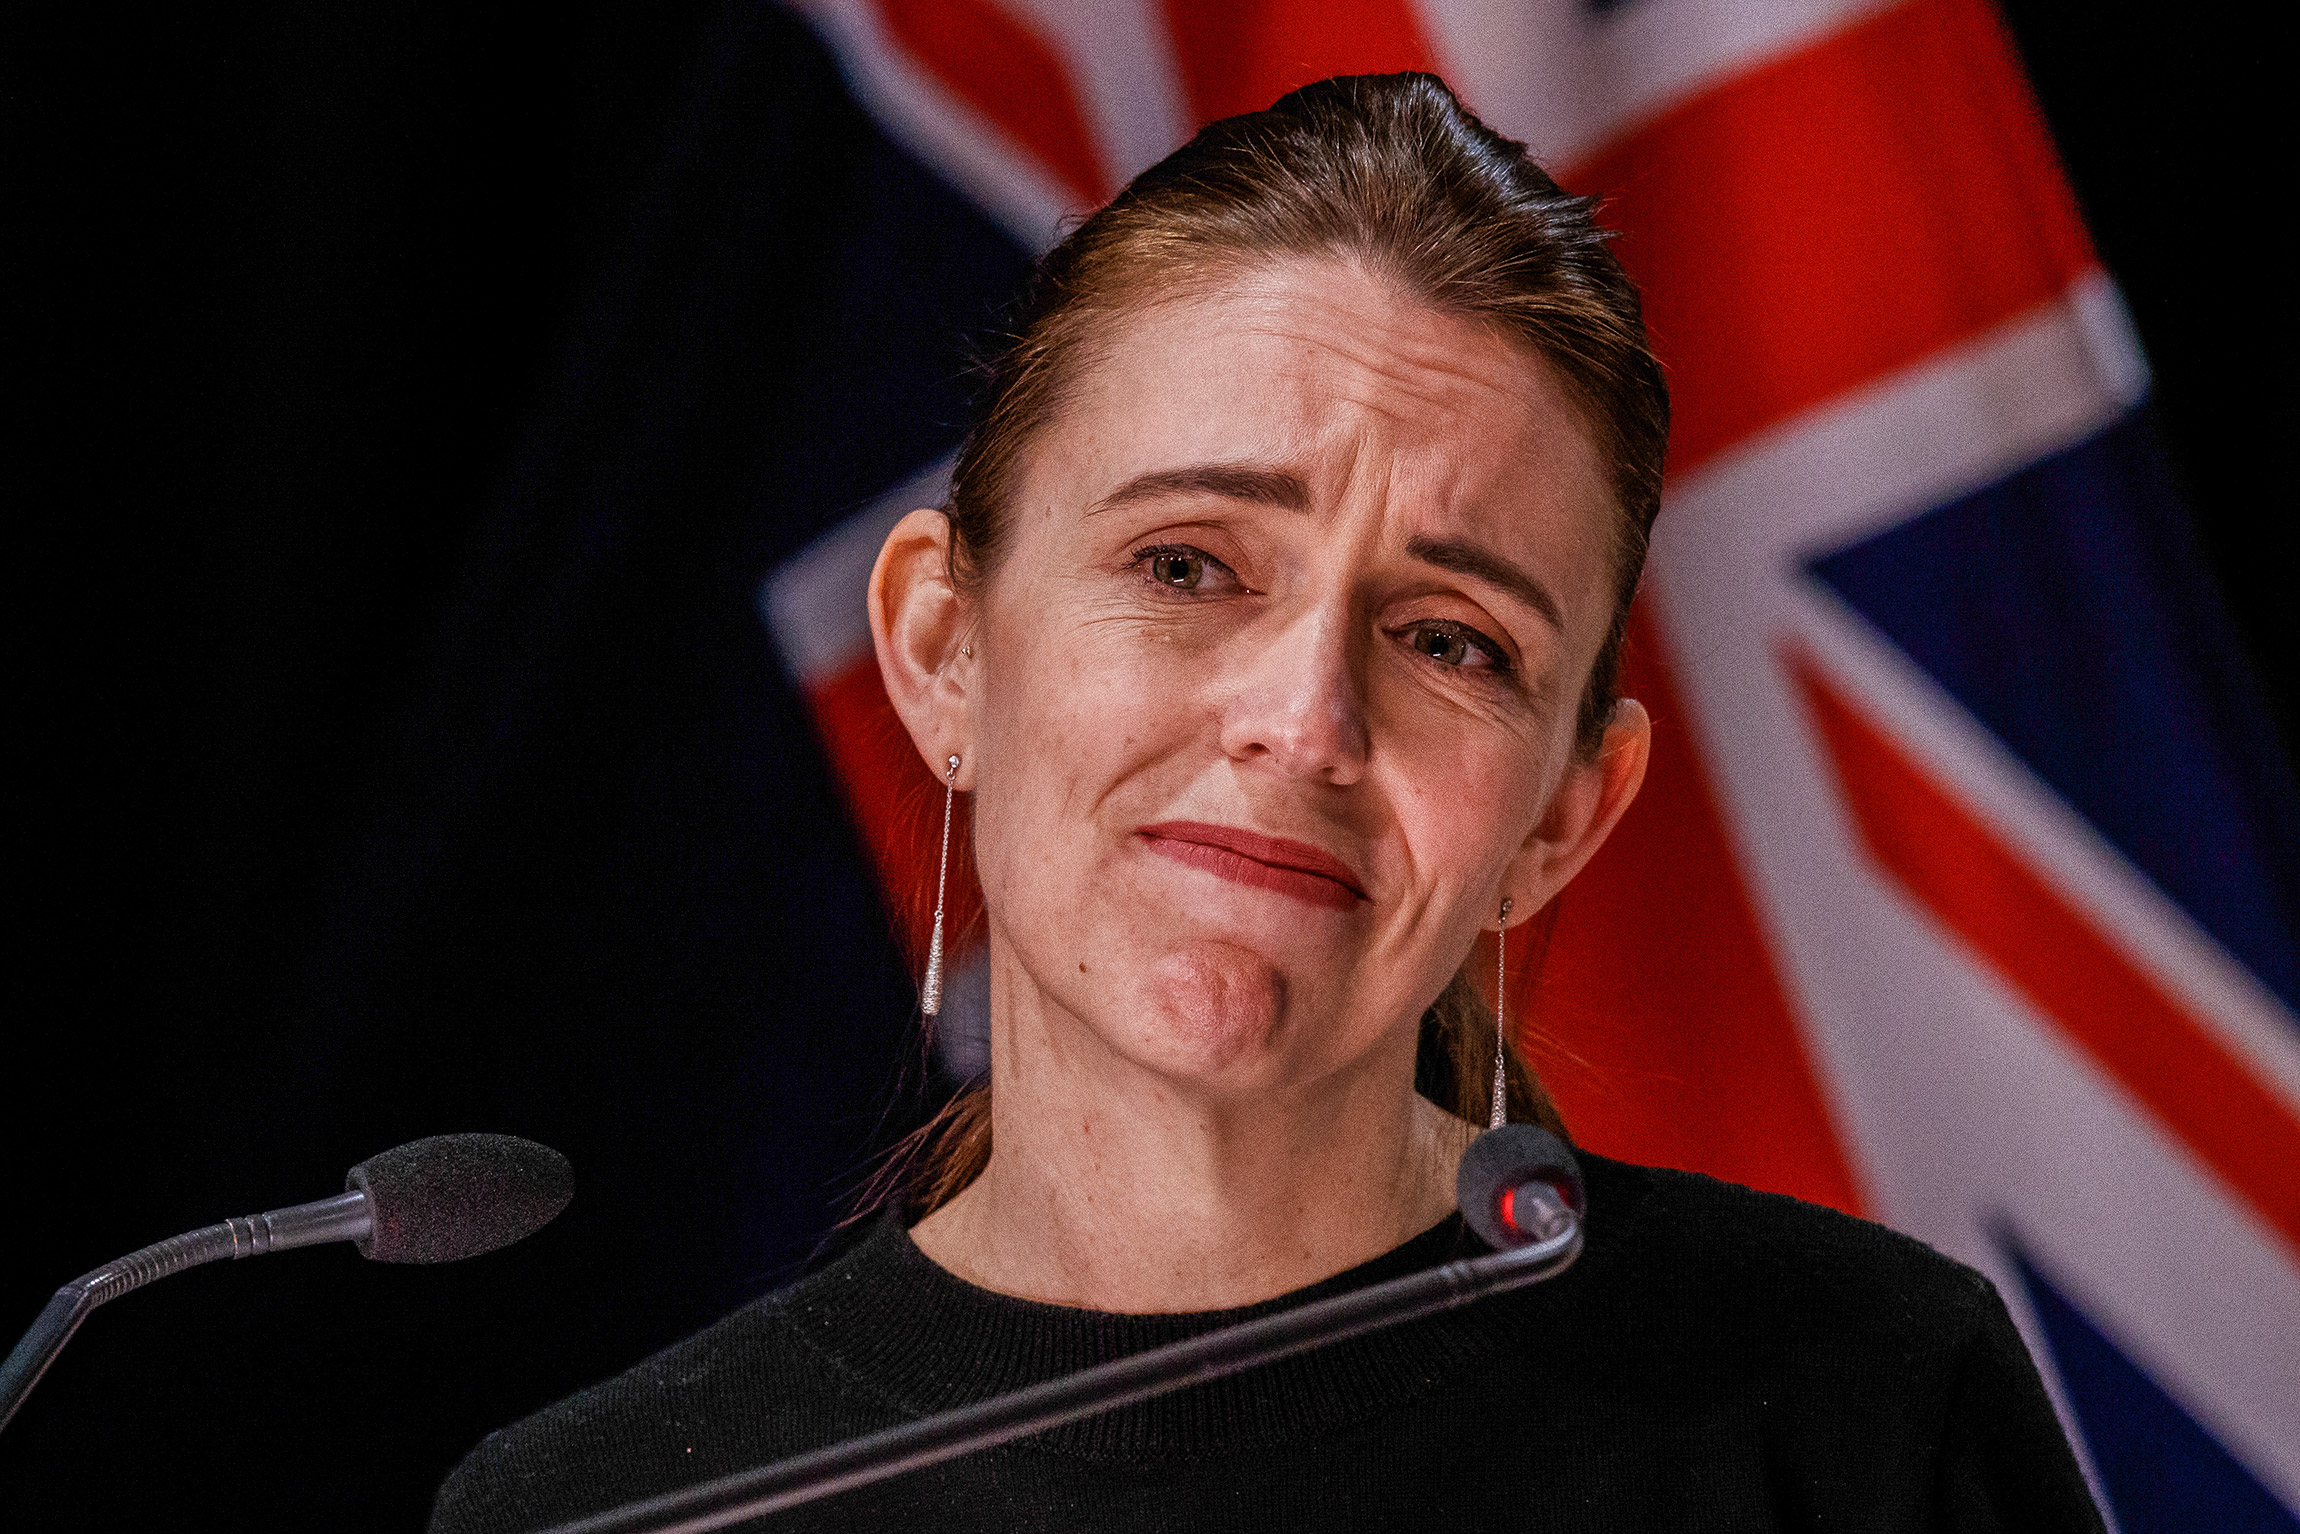 Премьер-министр Новой Зеландии Джасинда Ардерн на пресс-конференции о мерах борьбы с коронавирусом. 19 августа, Веллингтон.

17 августа в Новой Зеландии на несколько дней объявили жесткий карантин из-за первого за полгода случая заболевания COVID-19